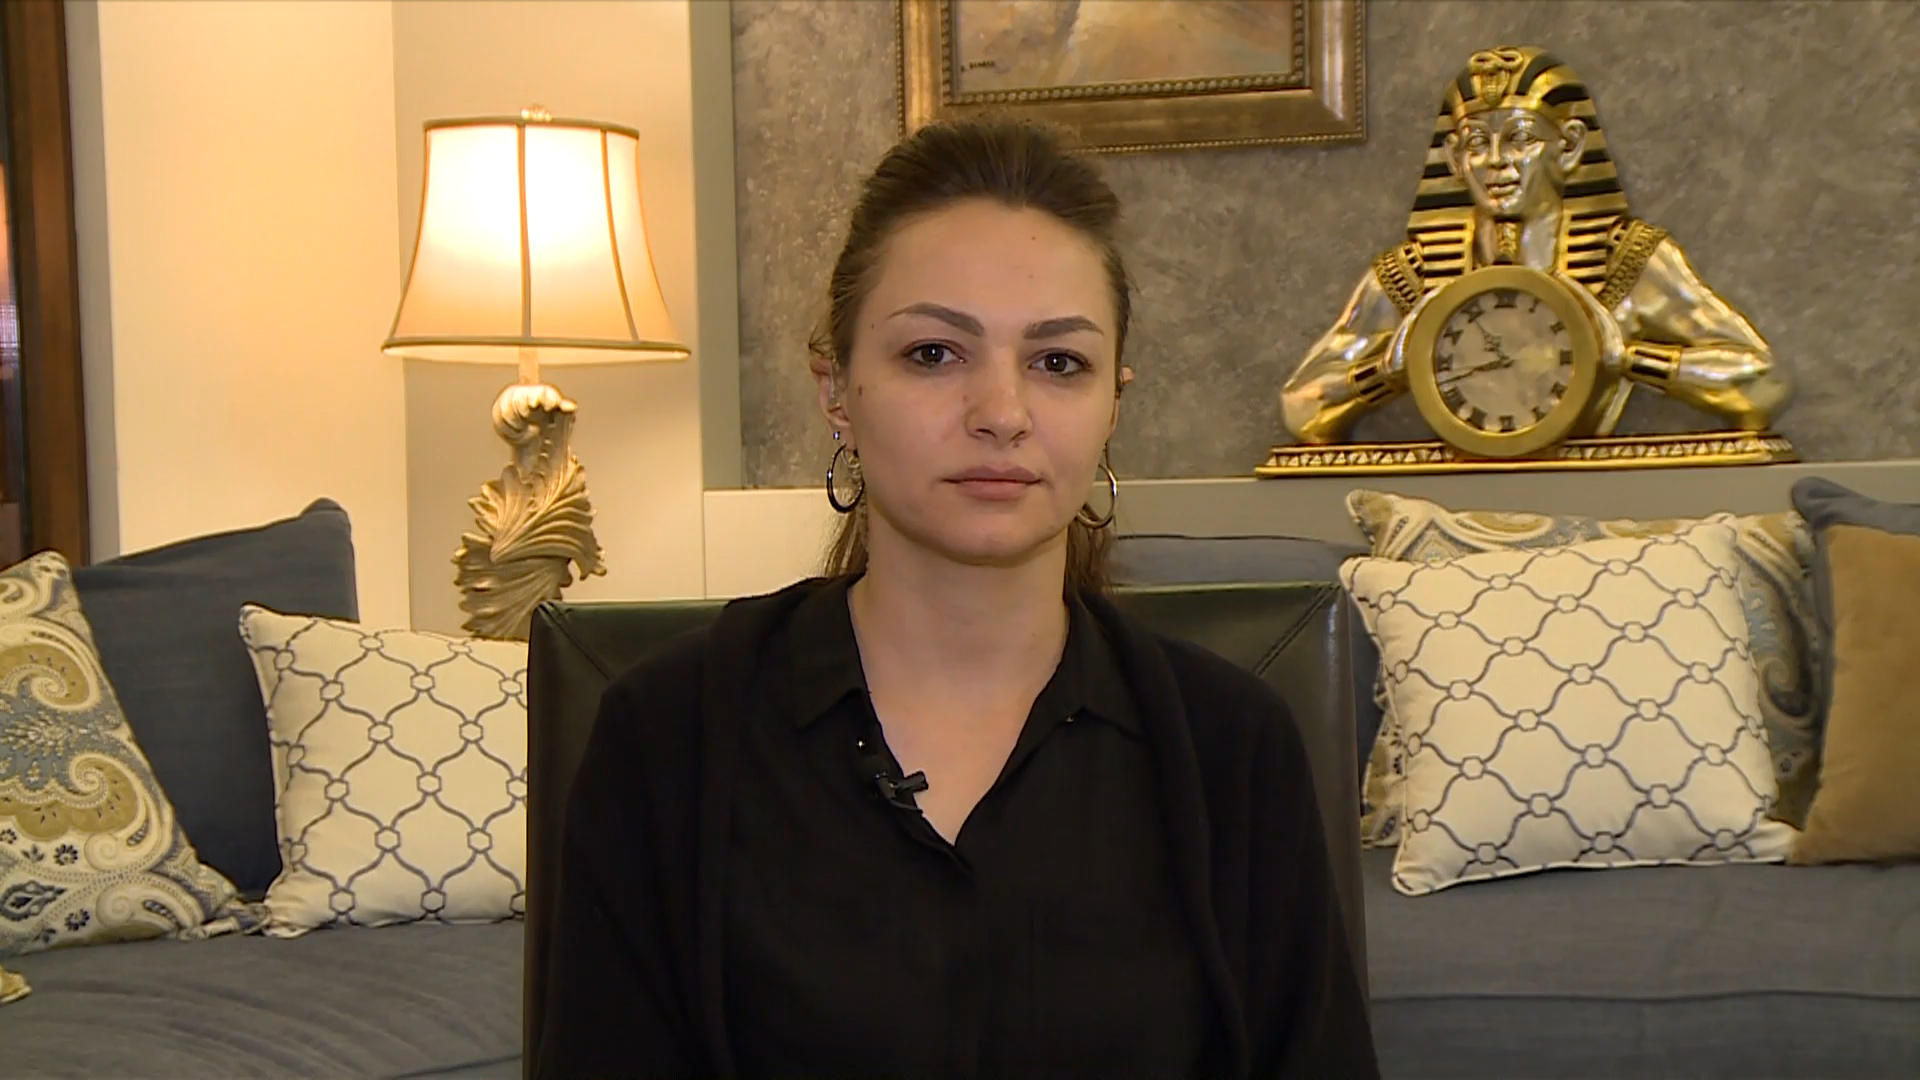  مجد الشراري، معلمة ناجية من حادثة البحر الميت، أثناء حديثها لقناة المملكة، 26 أكتوبر 2018. (المملكة)